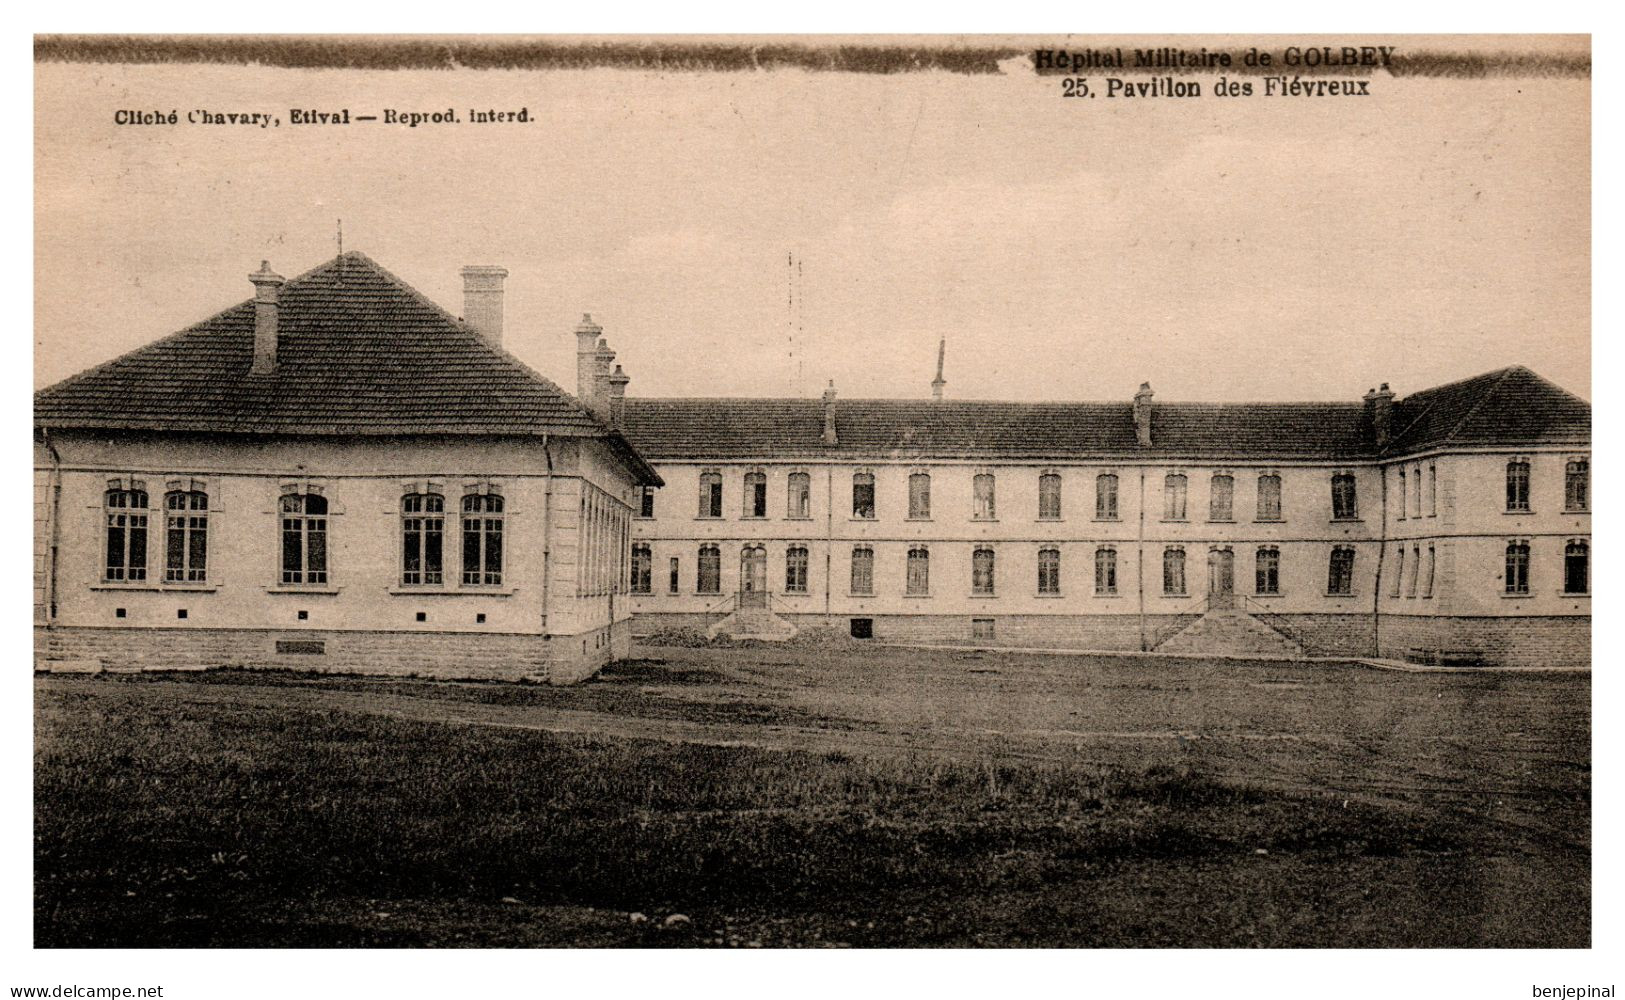 Hôpital Militaire D'Epinal (Golbey) - Pavillon Des Fièvreux - Golbey